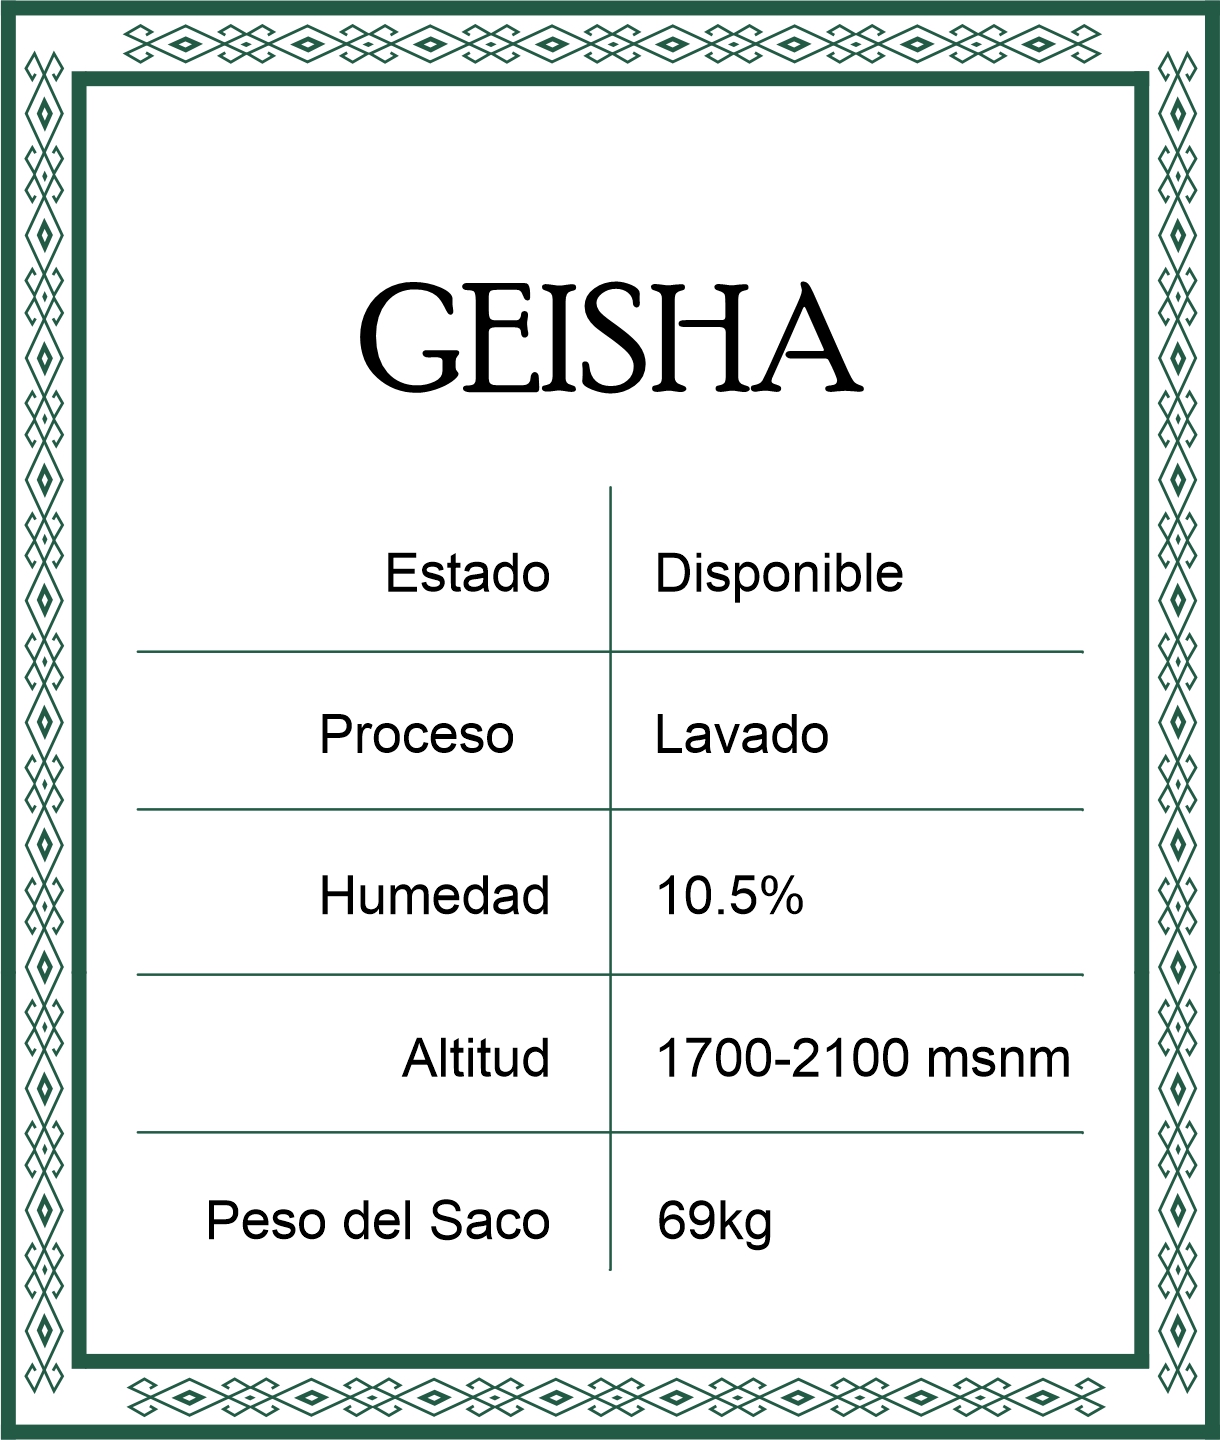 geisha lavado